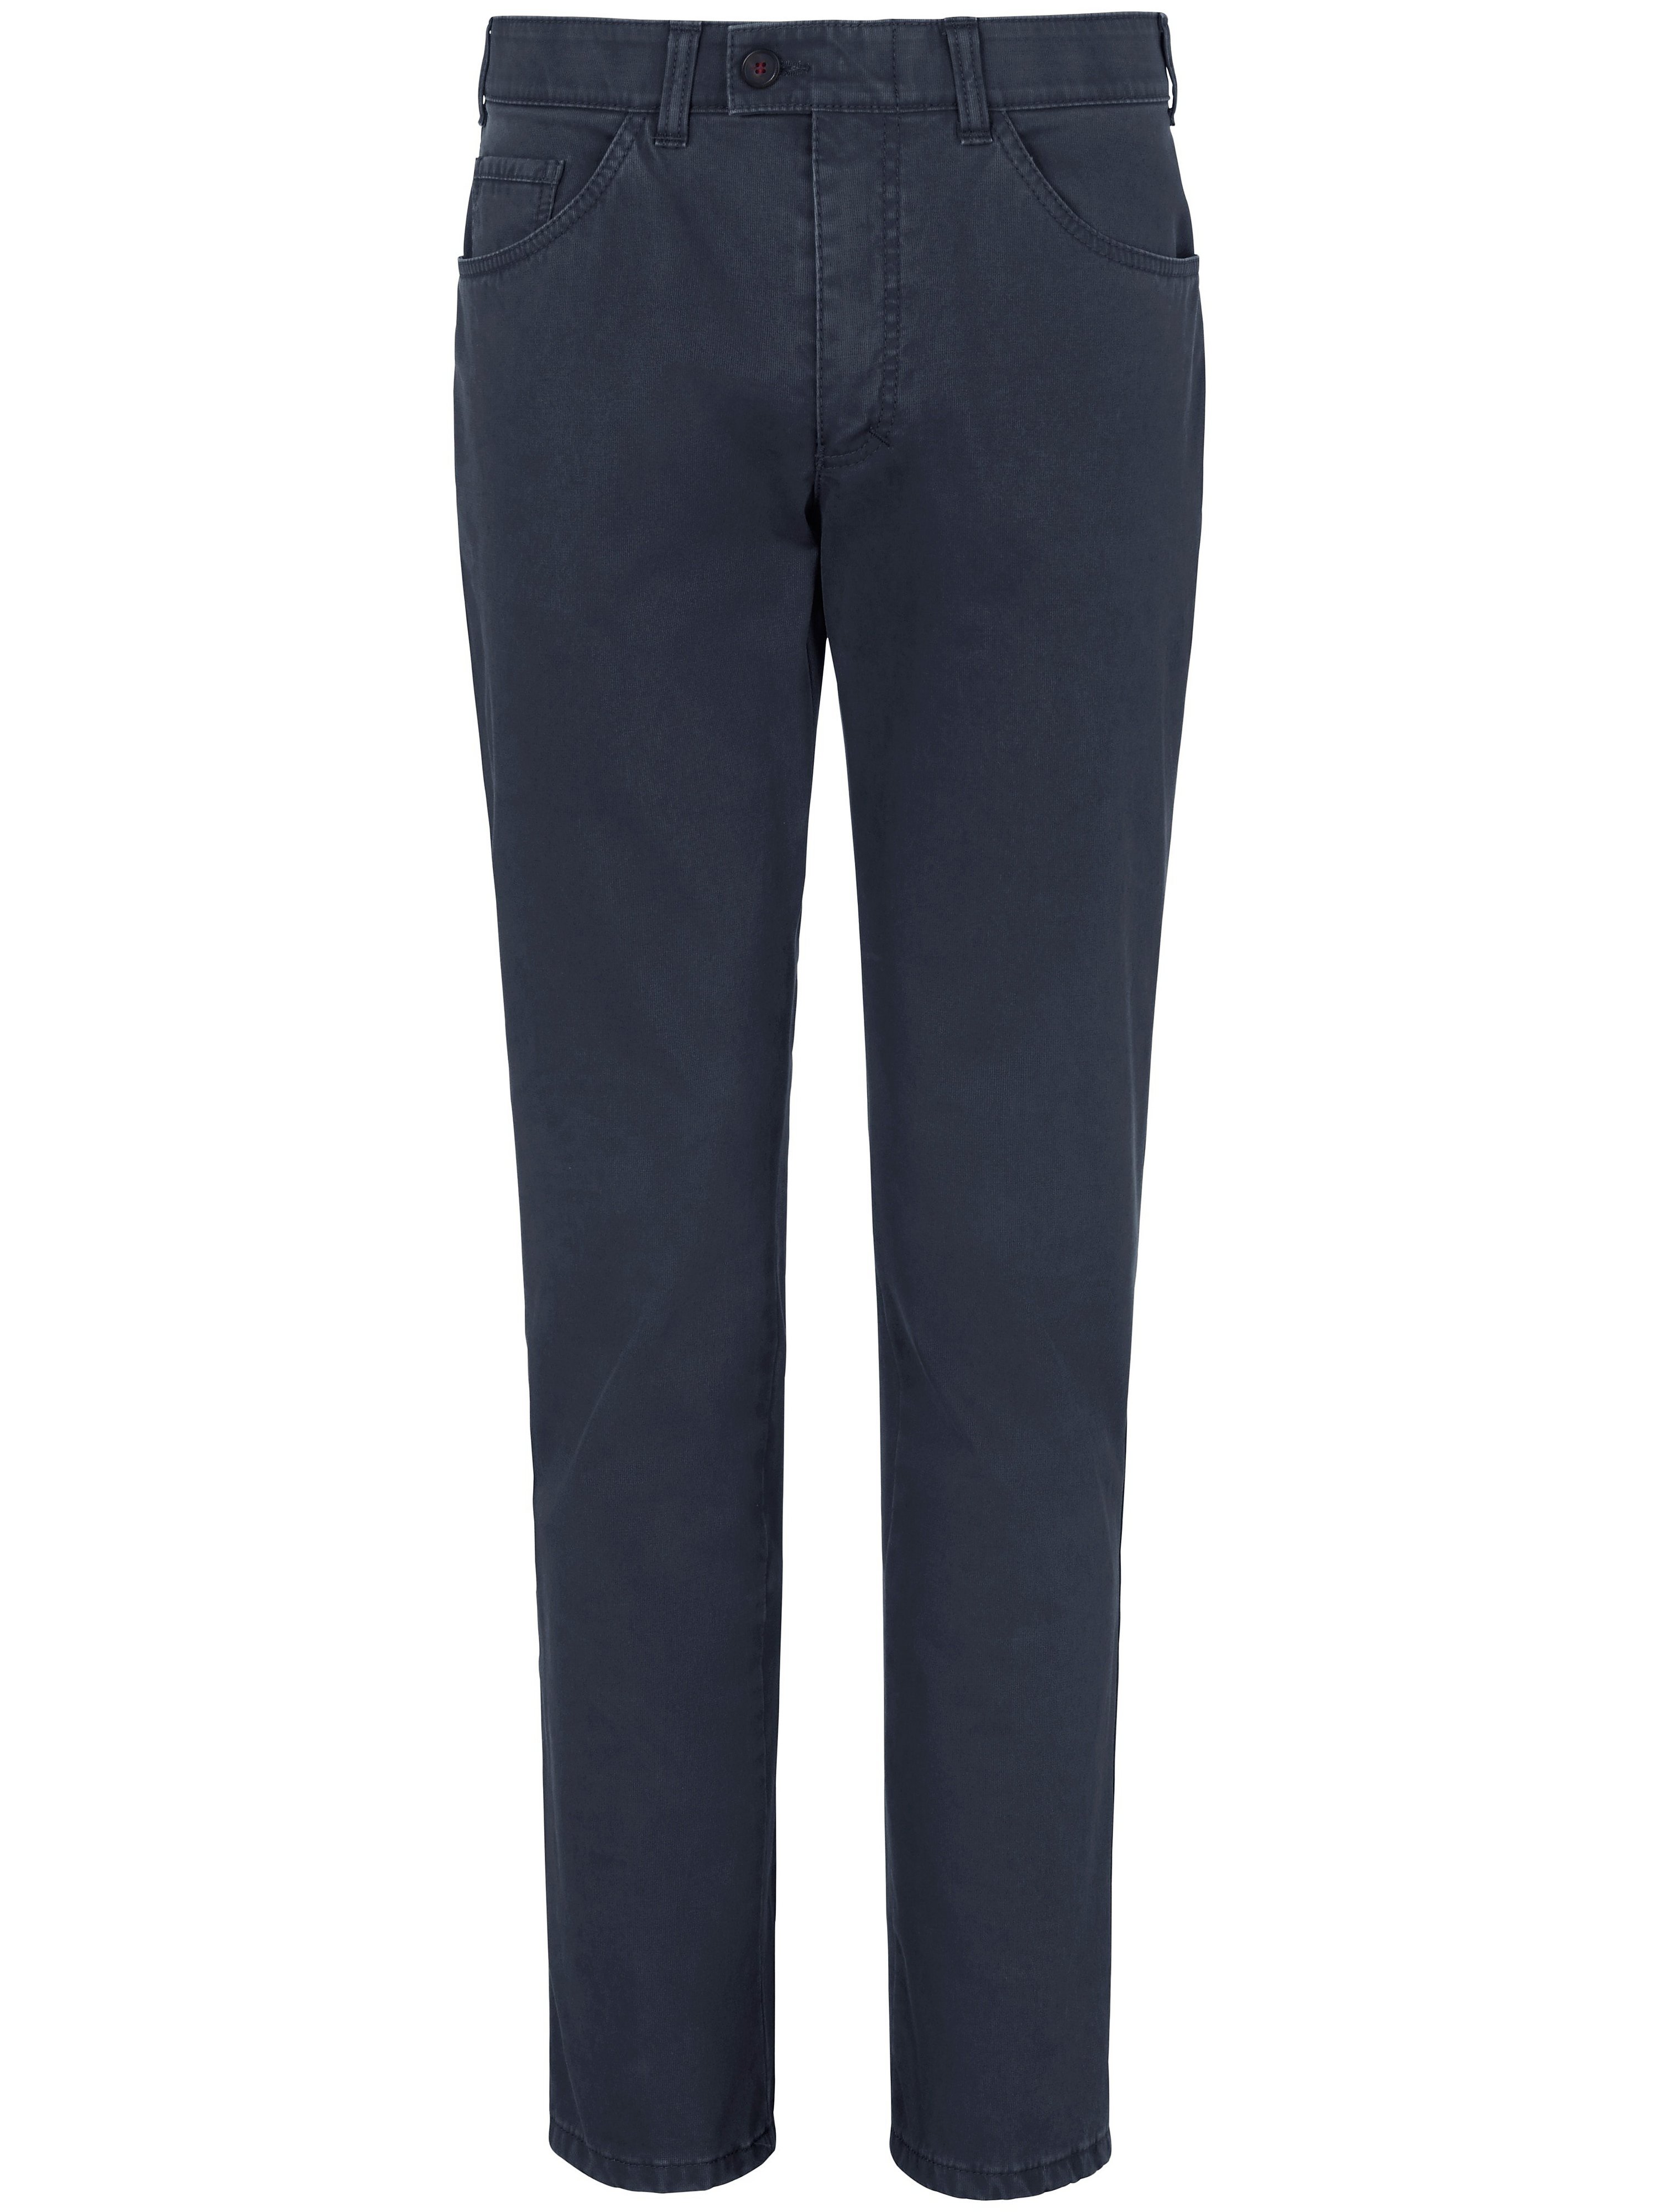 Pantalon chaud modèle Keno à taille confortable  CLUB OF COMFORT bleu taille 42